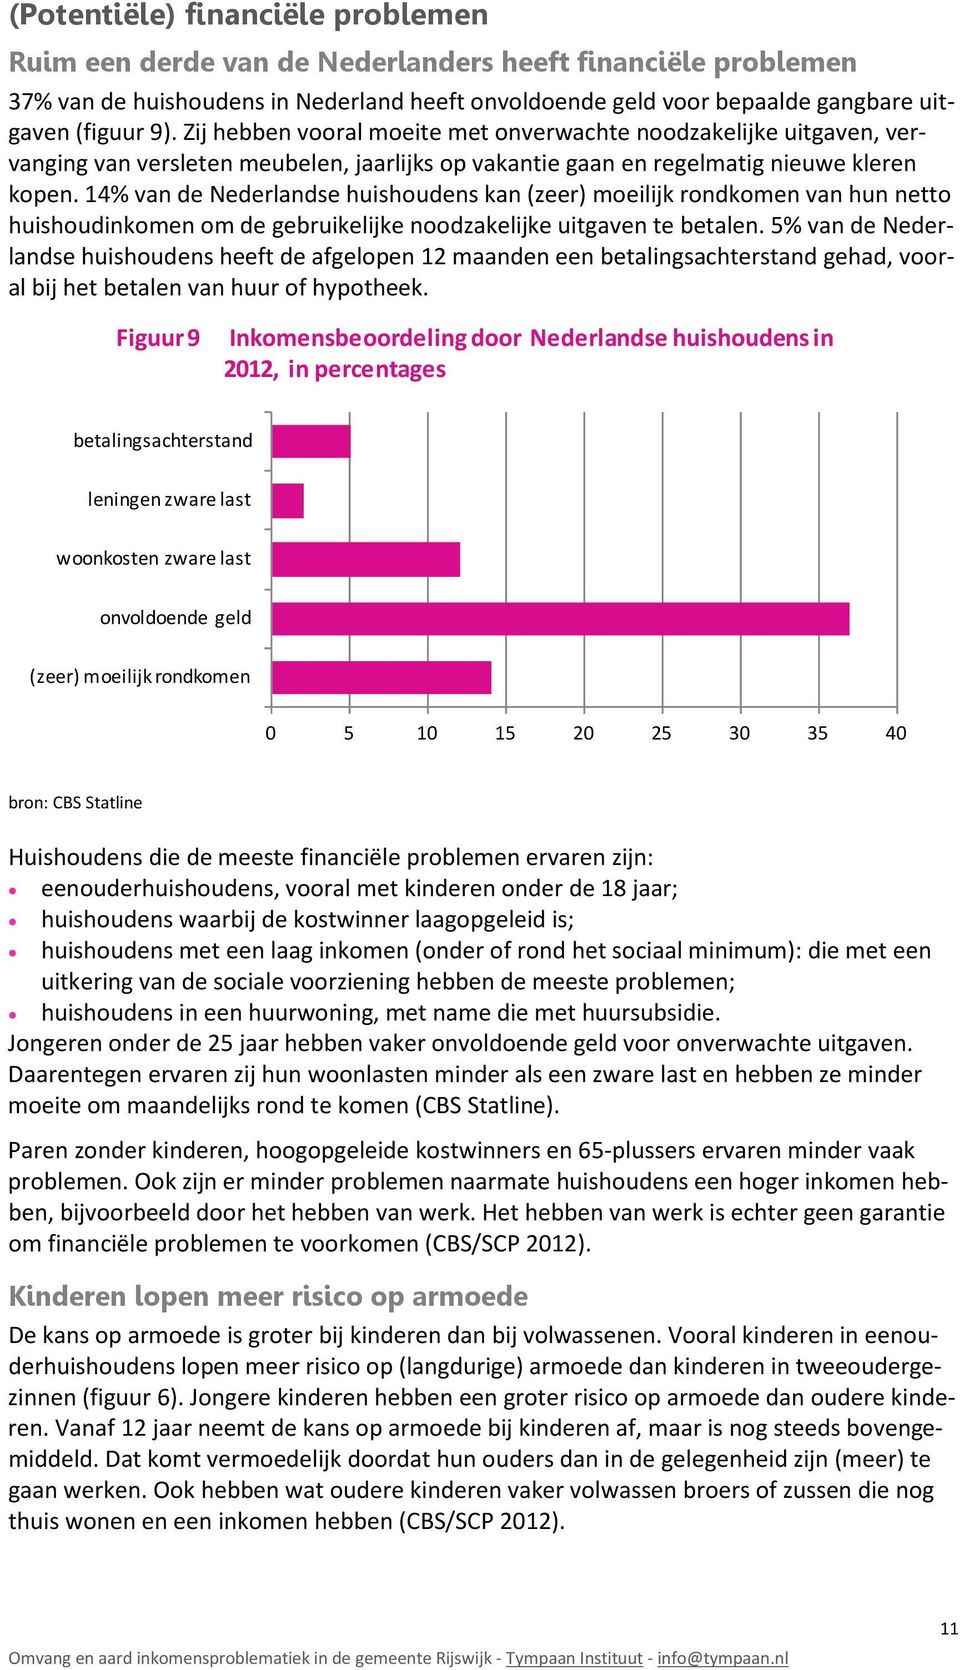 14% van de Nederlandse huishoudens kan (zeer) moeilijk rondkomen van hun netto huishoudinkomen om de gebruikelijke noodzakelijke uitgaven te betalen.